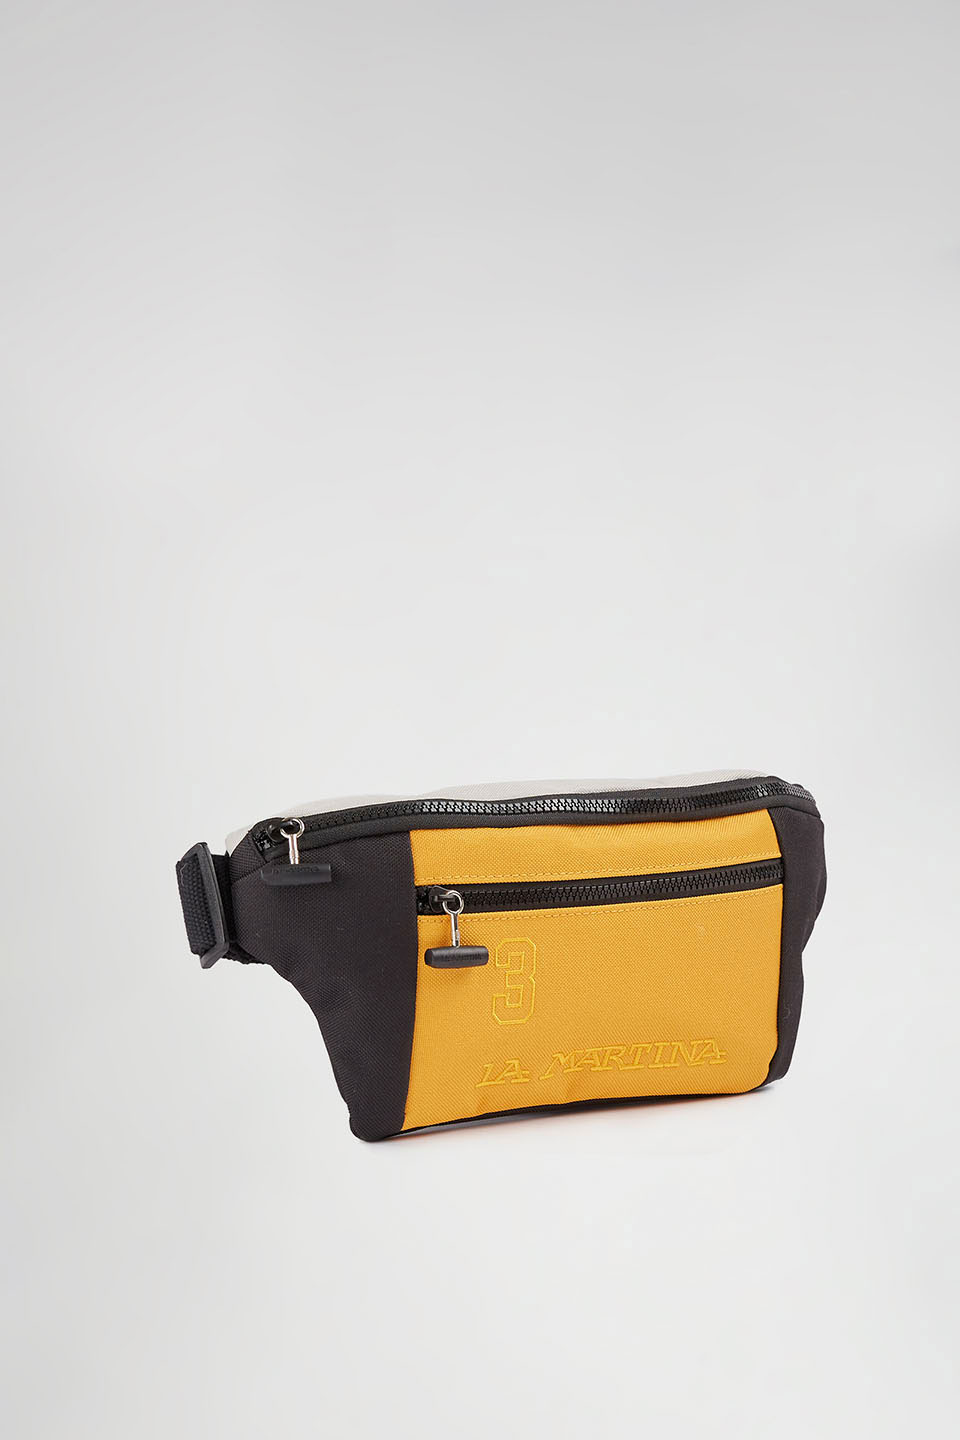 Polyester belt bag | La Martina - Official Online Shop